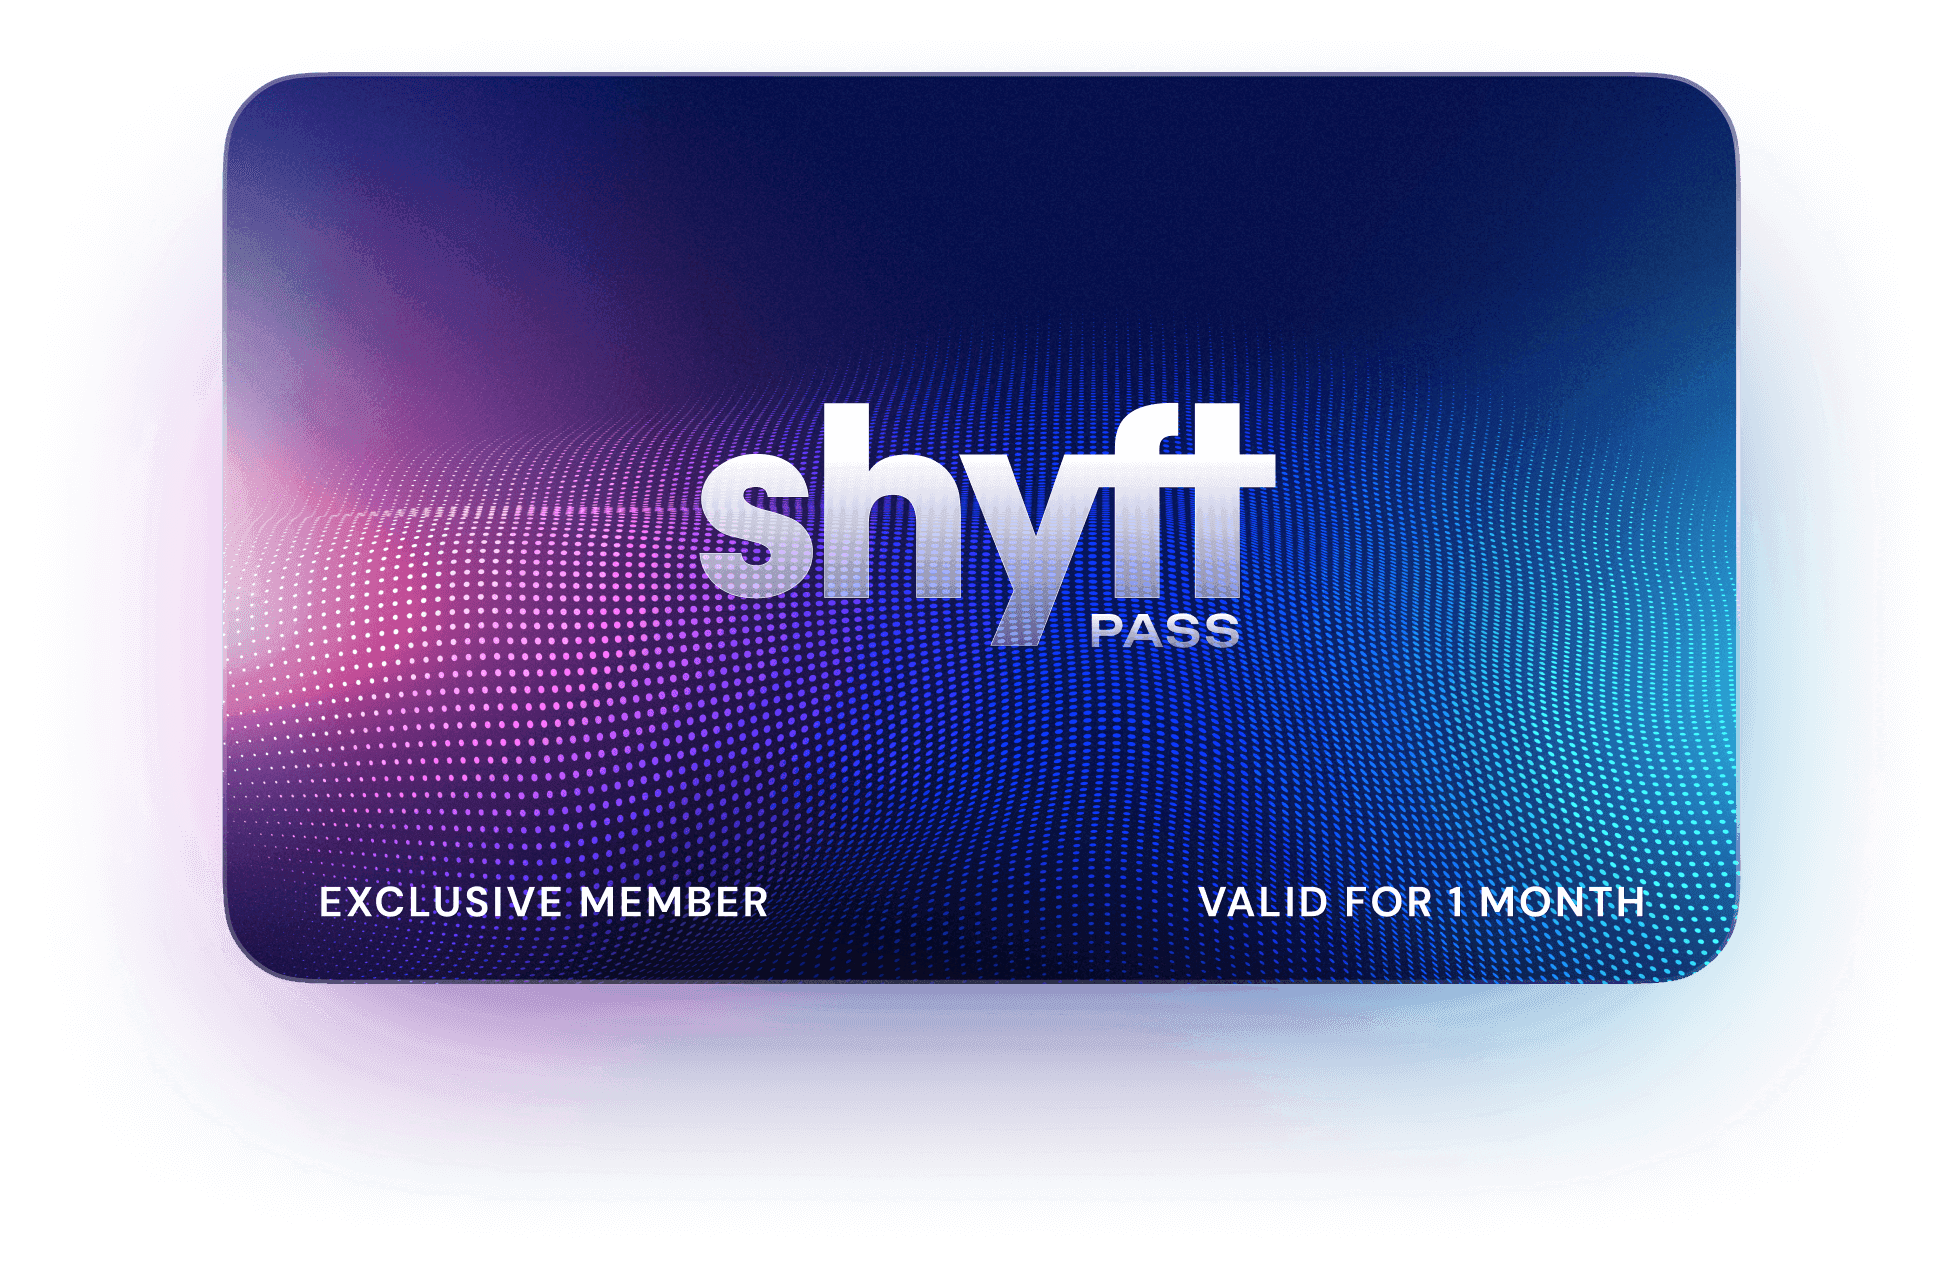 shyft-pass-card